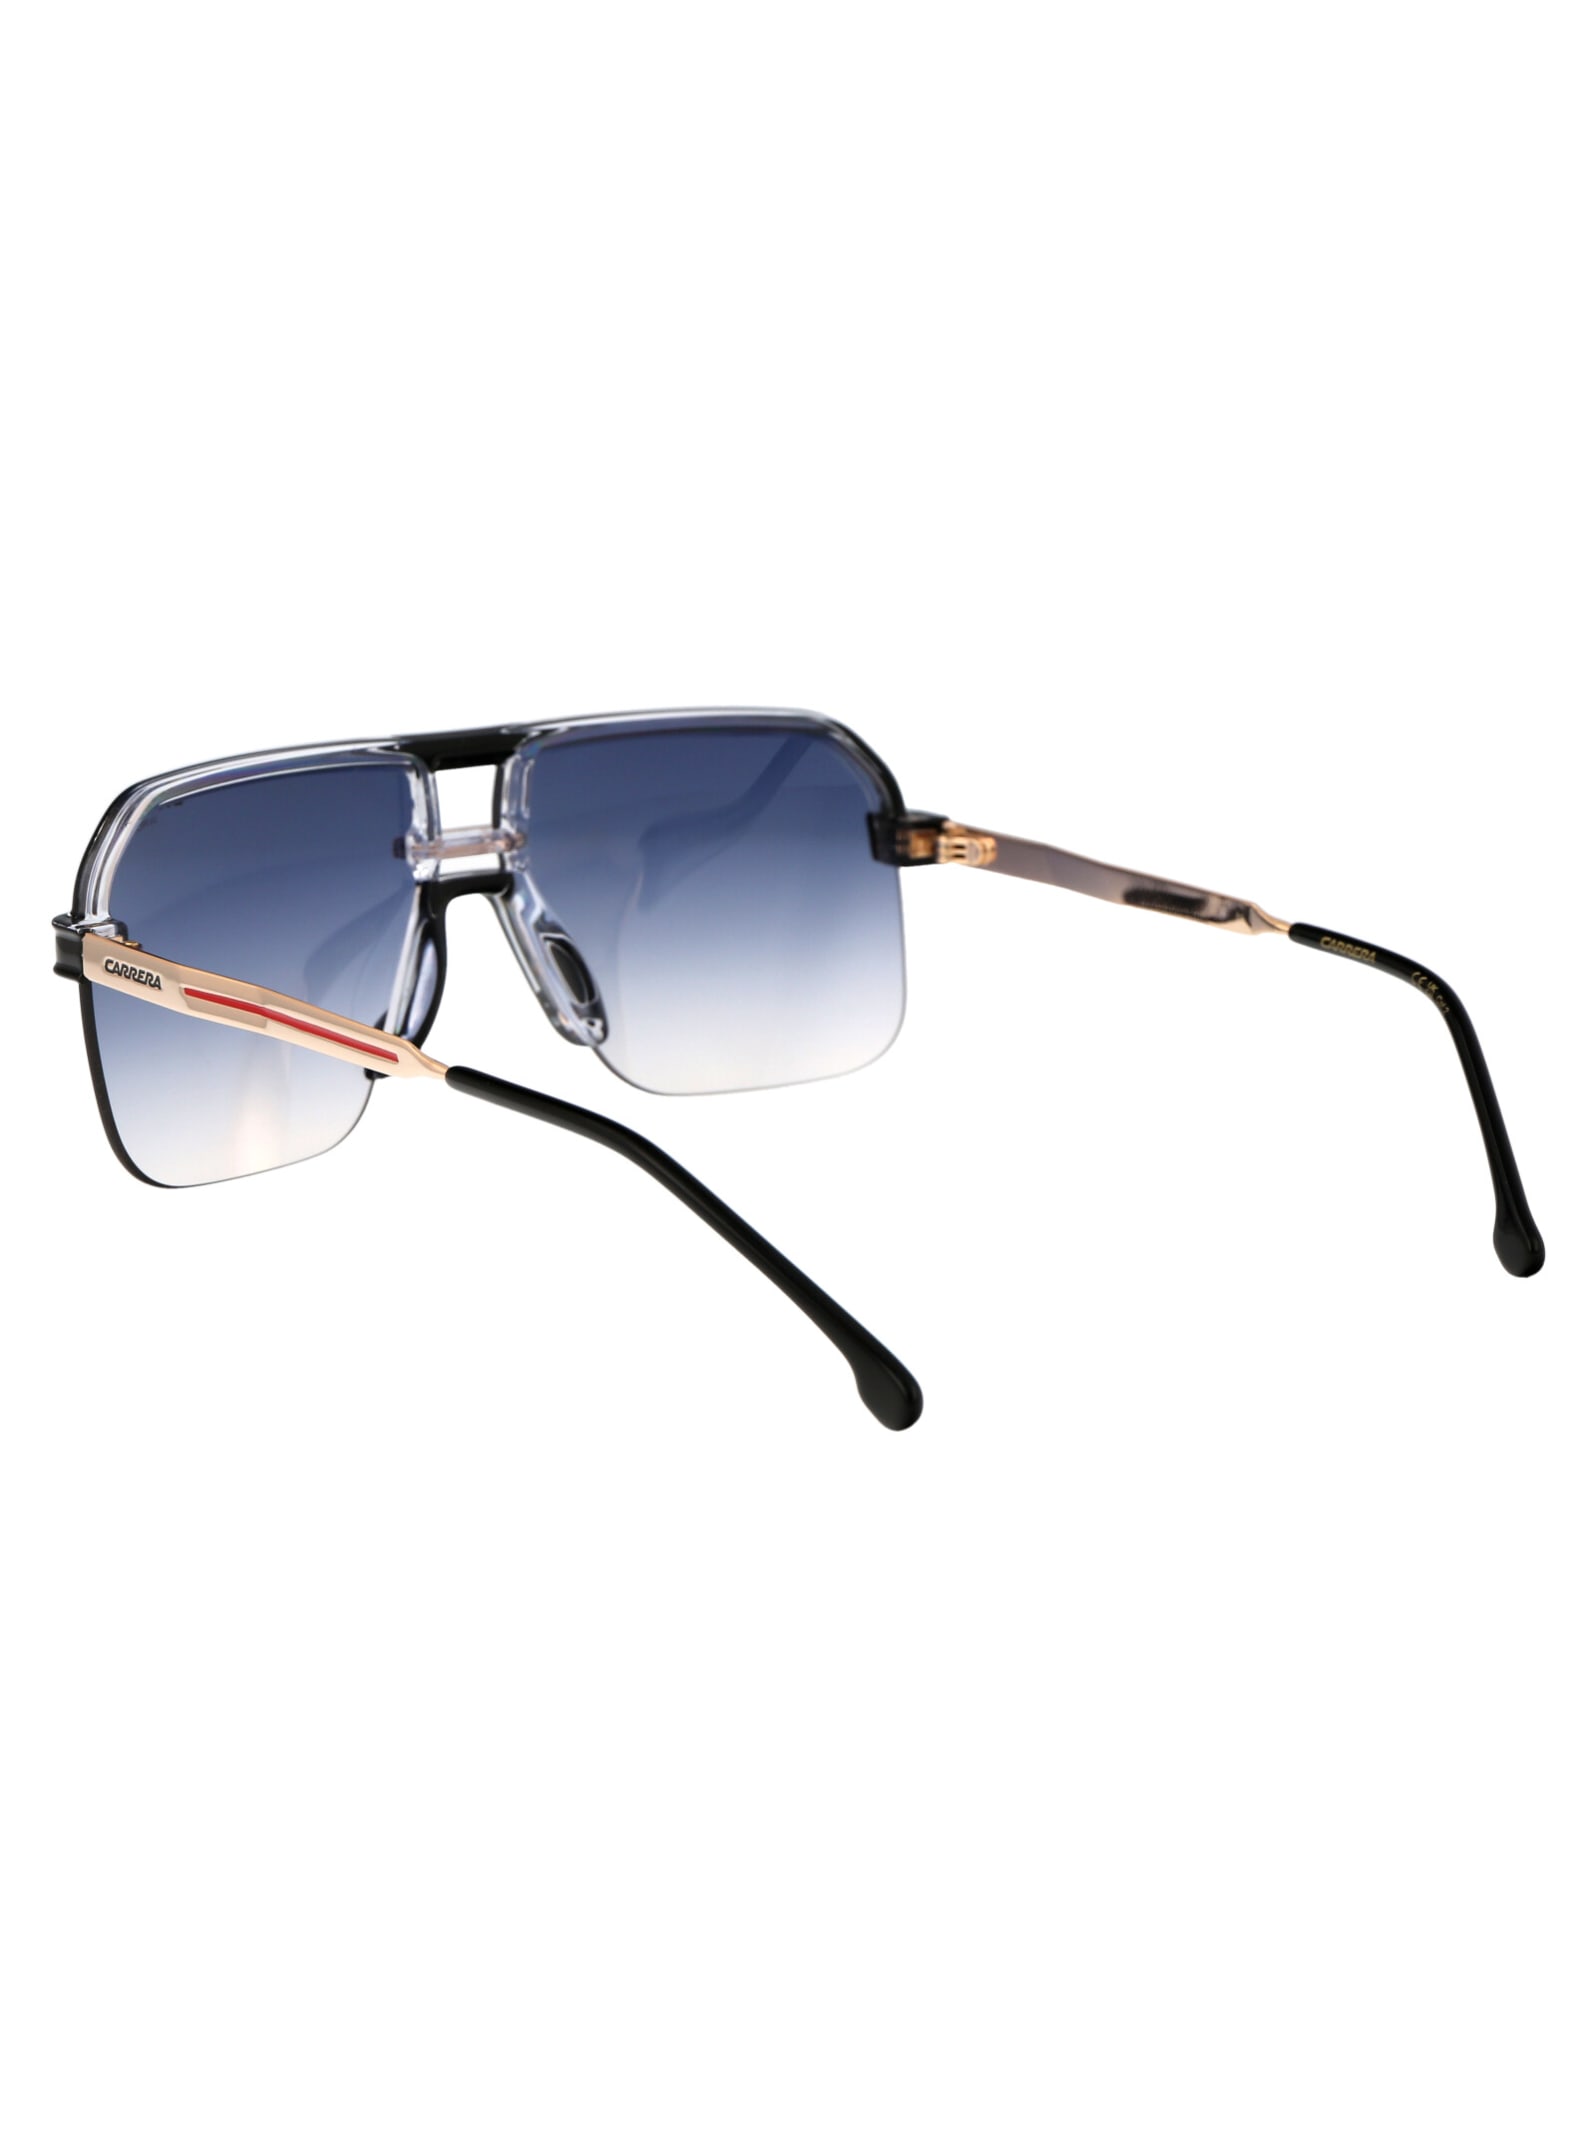 Shop Carrera 1066/s Sunglasses In 7c508 Black Cry